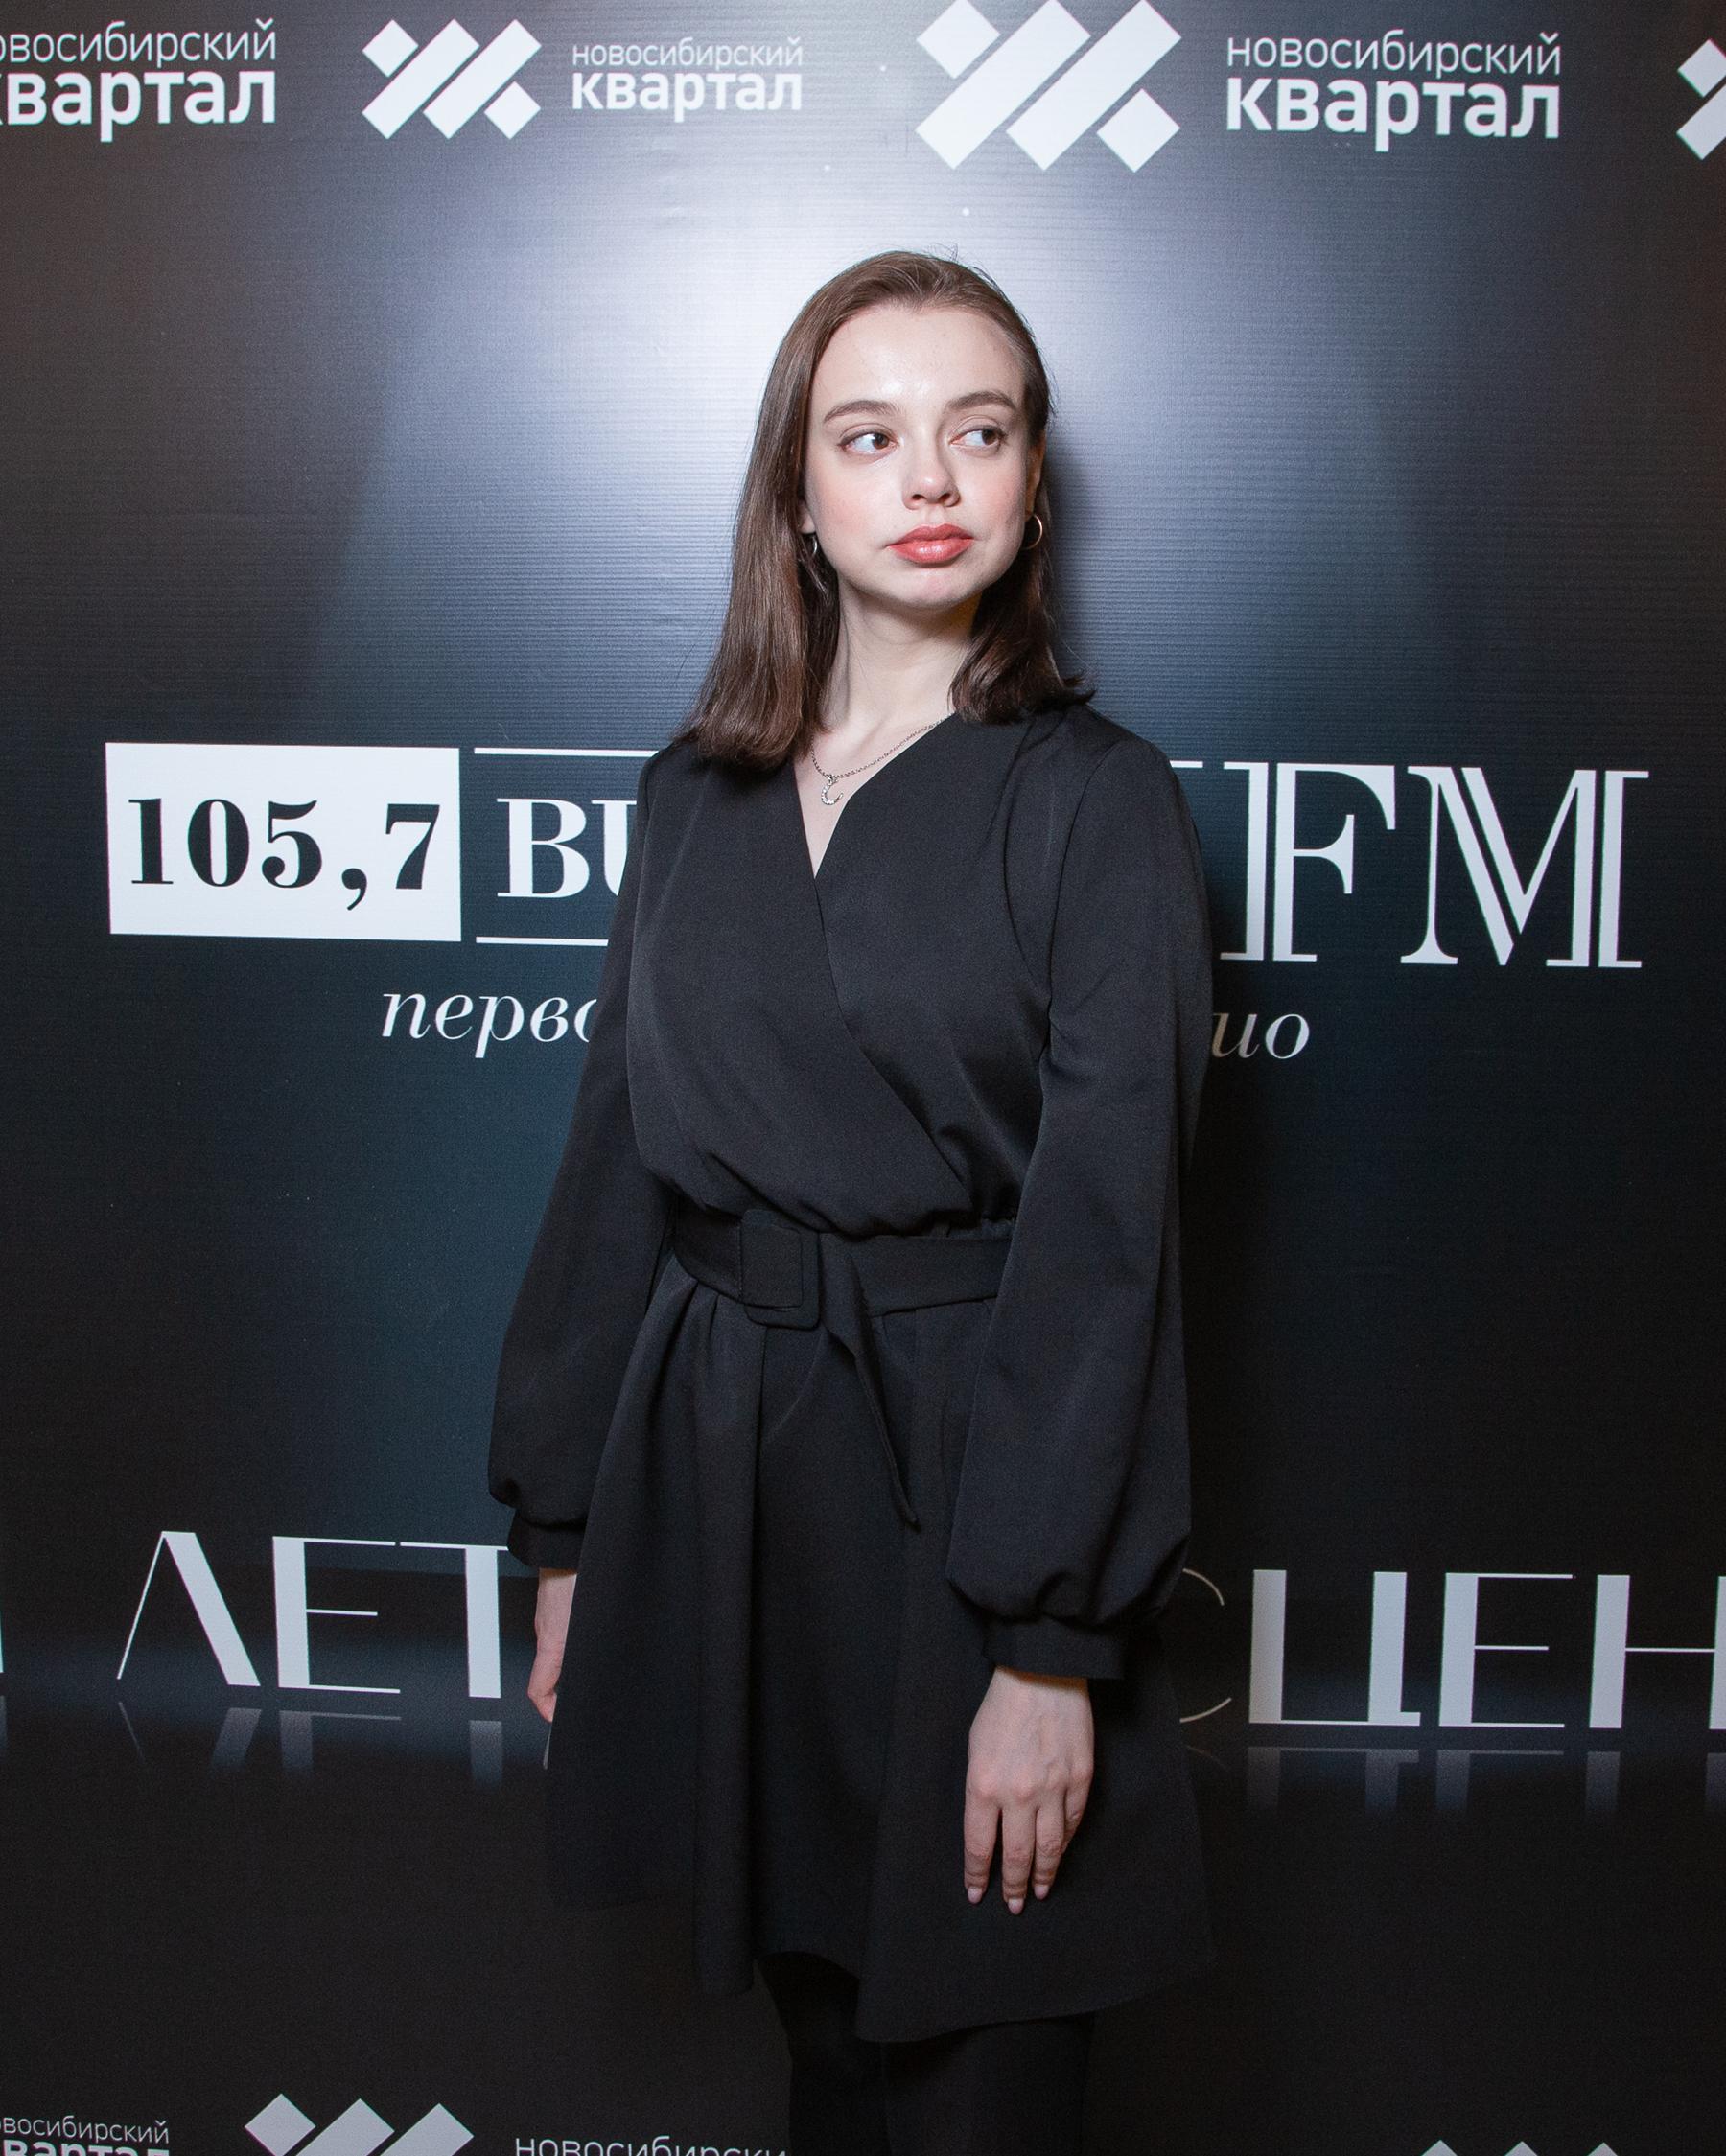 Фото Радиостанция Business FM в Новосибирске отметила 11 лет в эфире 29